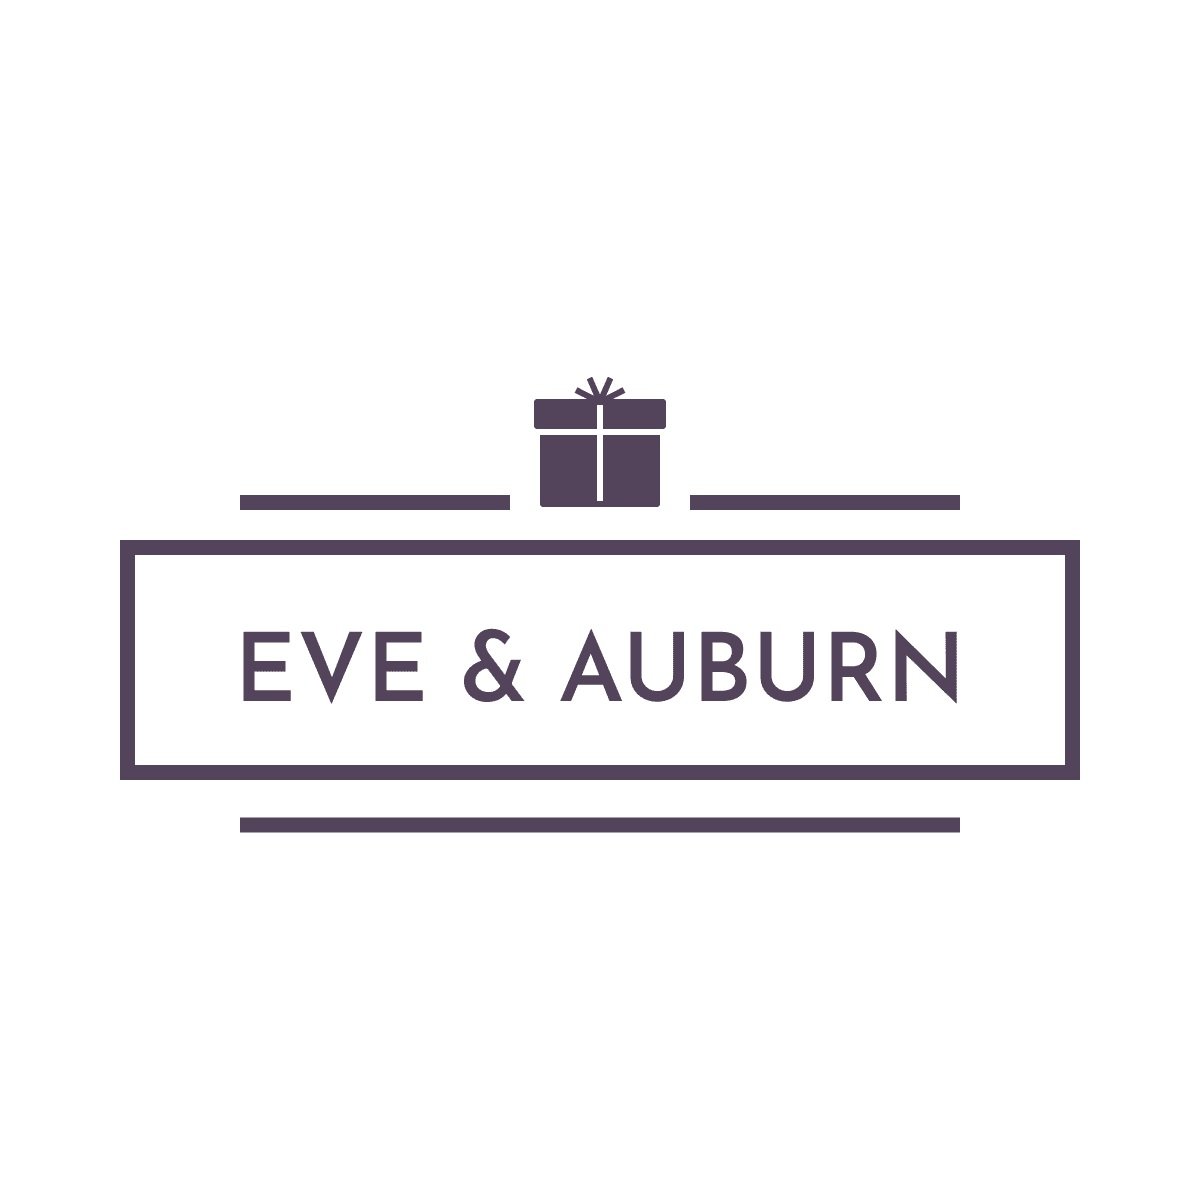 Eve & Auburn